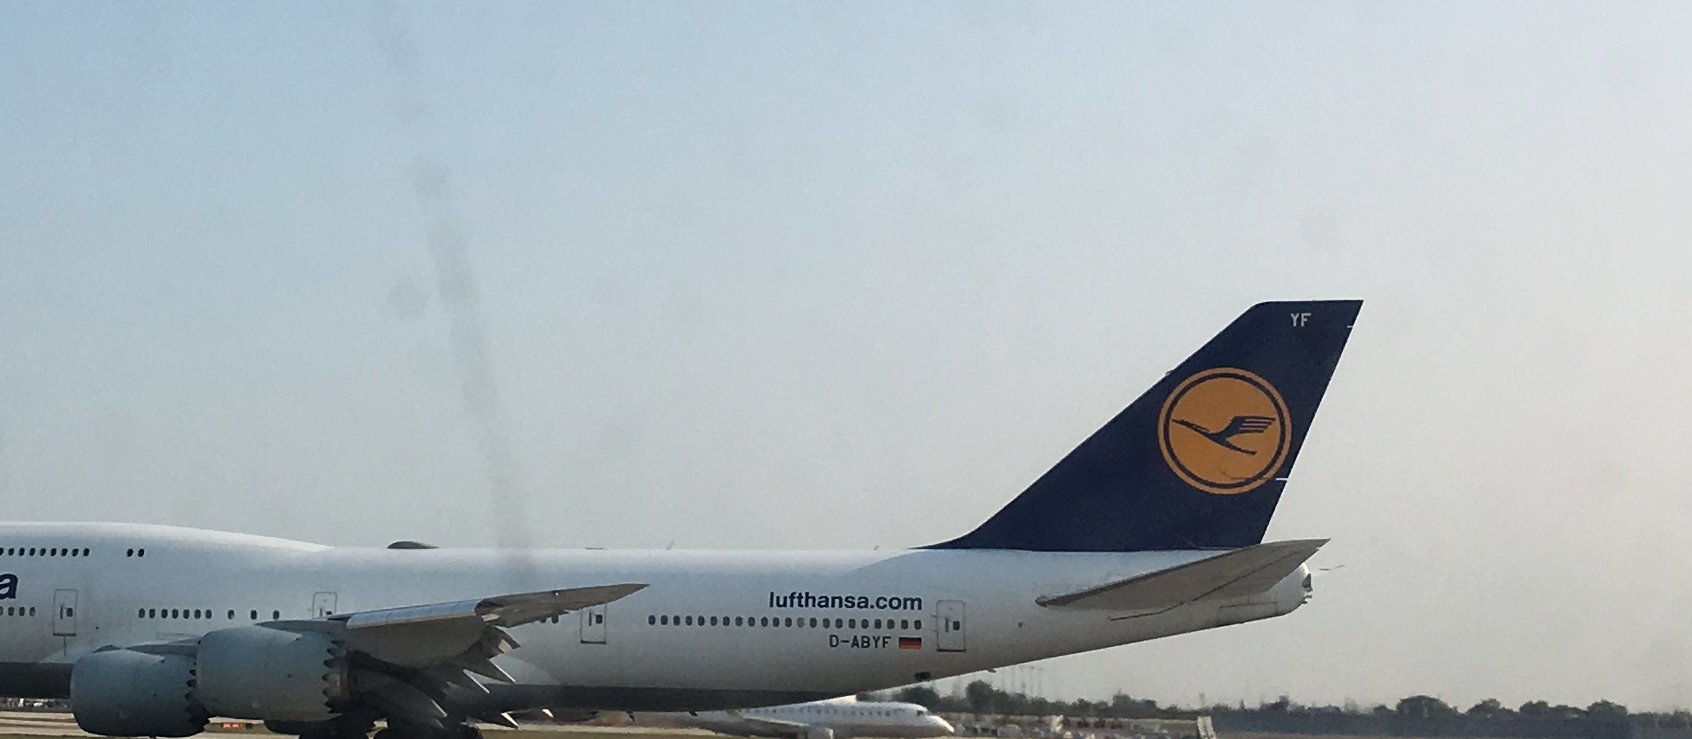 A Lufthansa Boeing 747 jet.